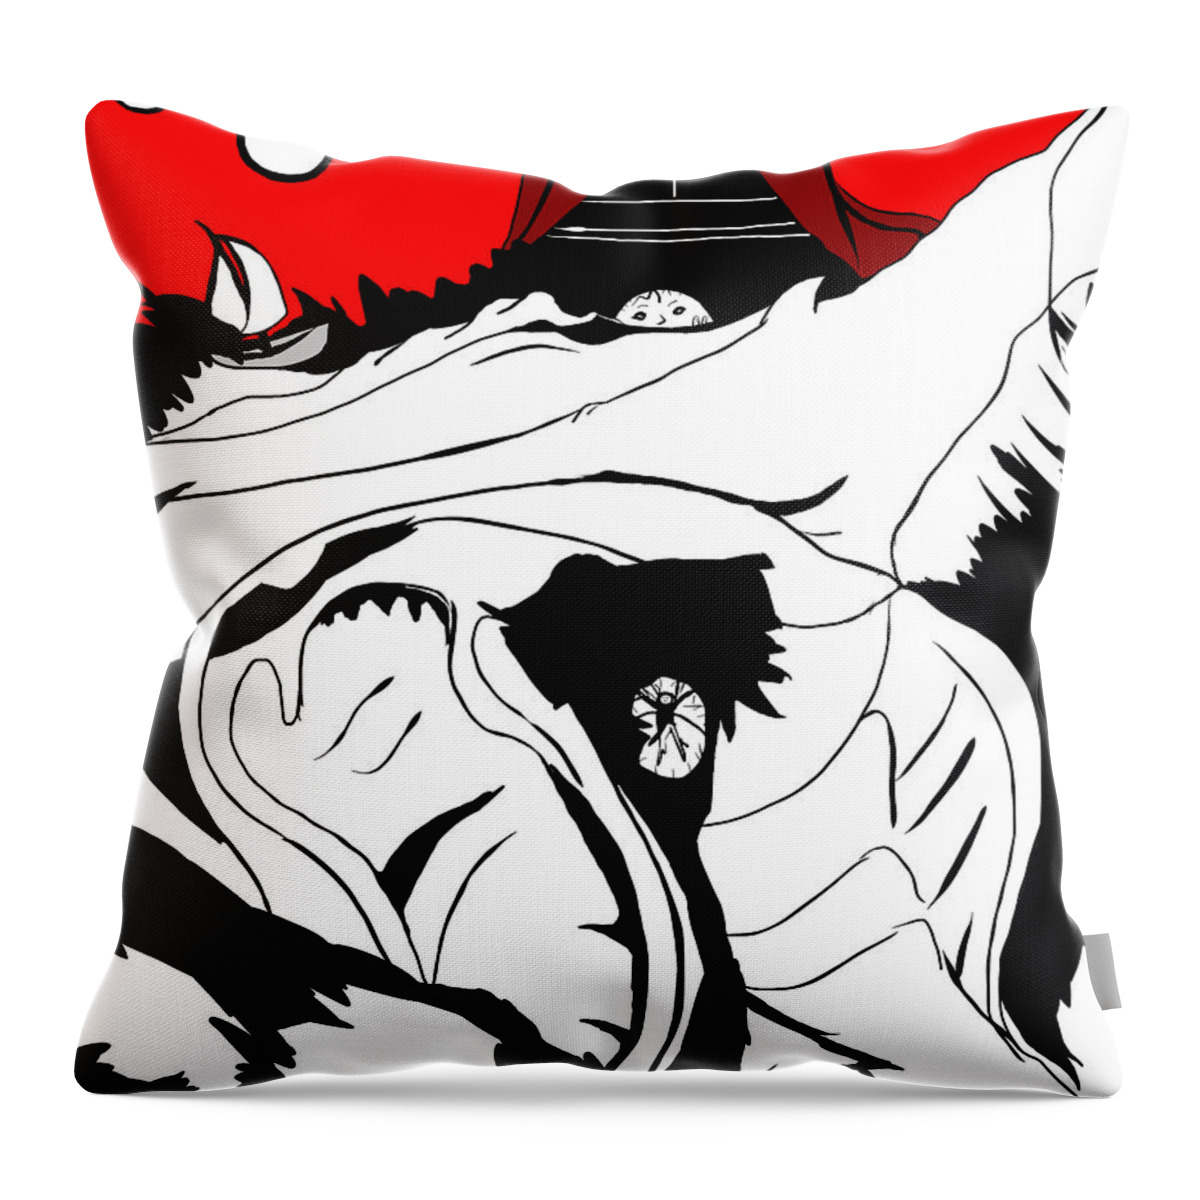 Dog Throw Pillow featuring the digital art Best Friend by Craig Tilley